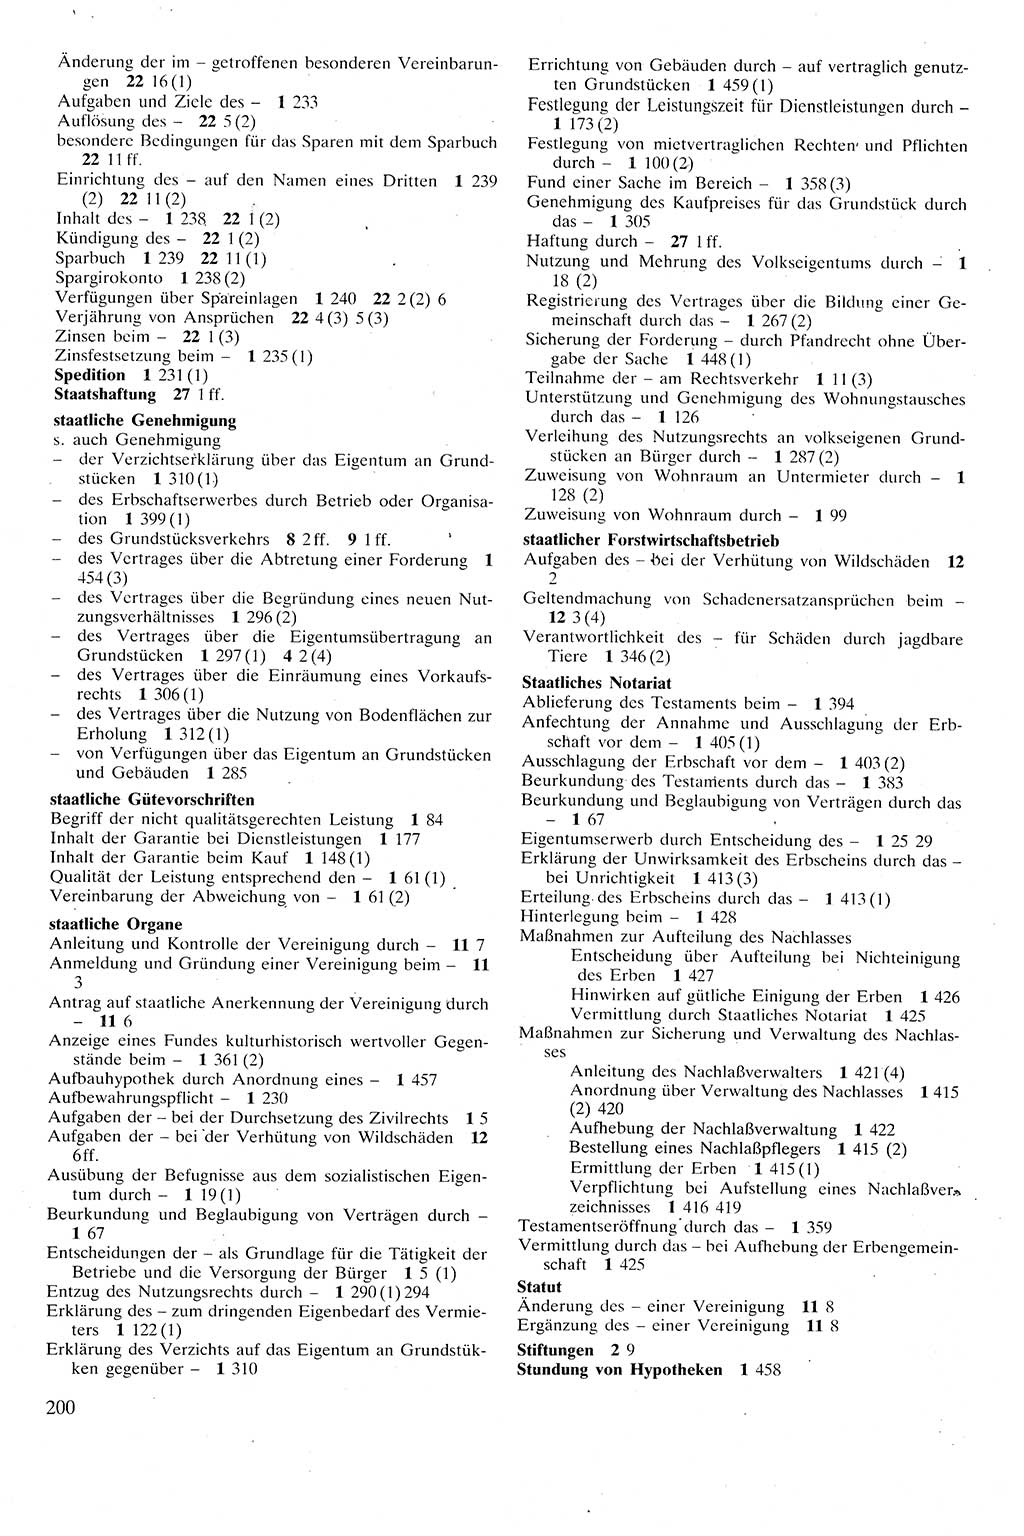 Zivilgesetzbuch (ZVG) sowie angrenzende Gesetze und Bestimmungen [Deutsche Demokratische Republik (DDR)] 1975, Seite 200 (ZGB Ges. Best. DDR 1975, S. 200)